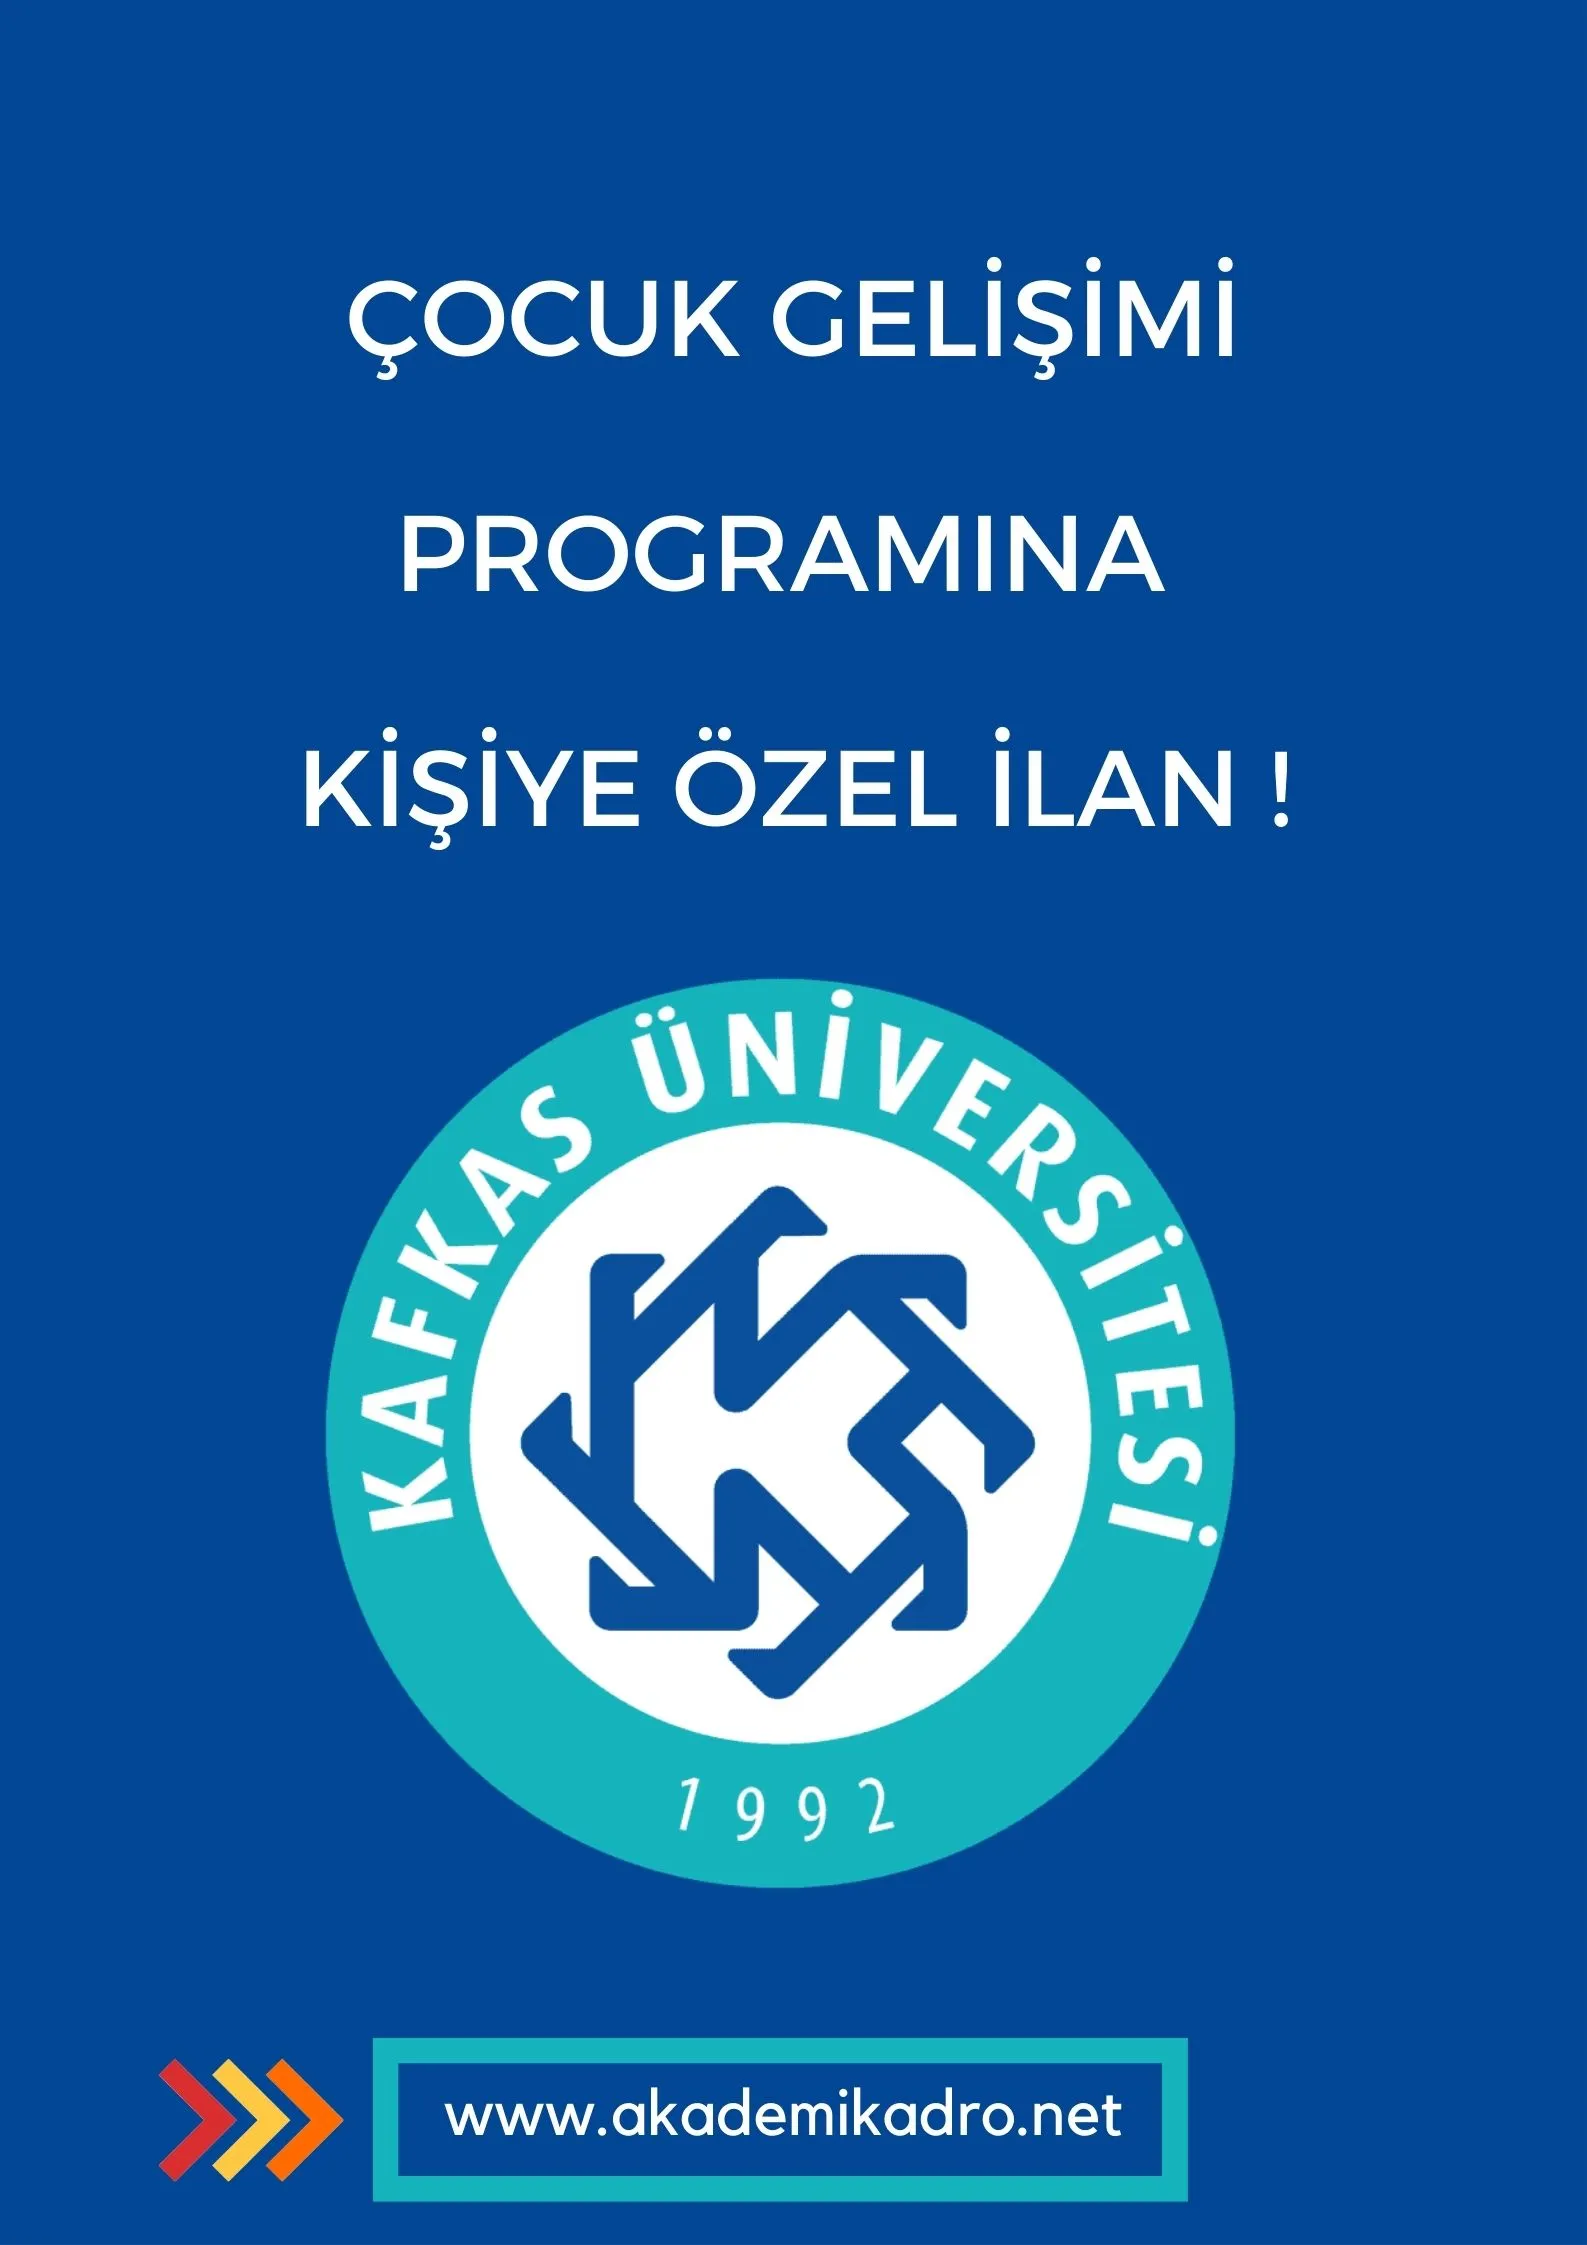 Kafkas Üniversitesi Sosyal Bilimleri Meslek Yüksekokulu Çocuk Gelişimi programında kişiye özel ilana çıkıldı.